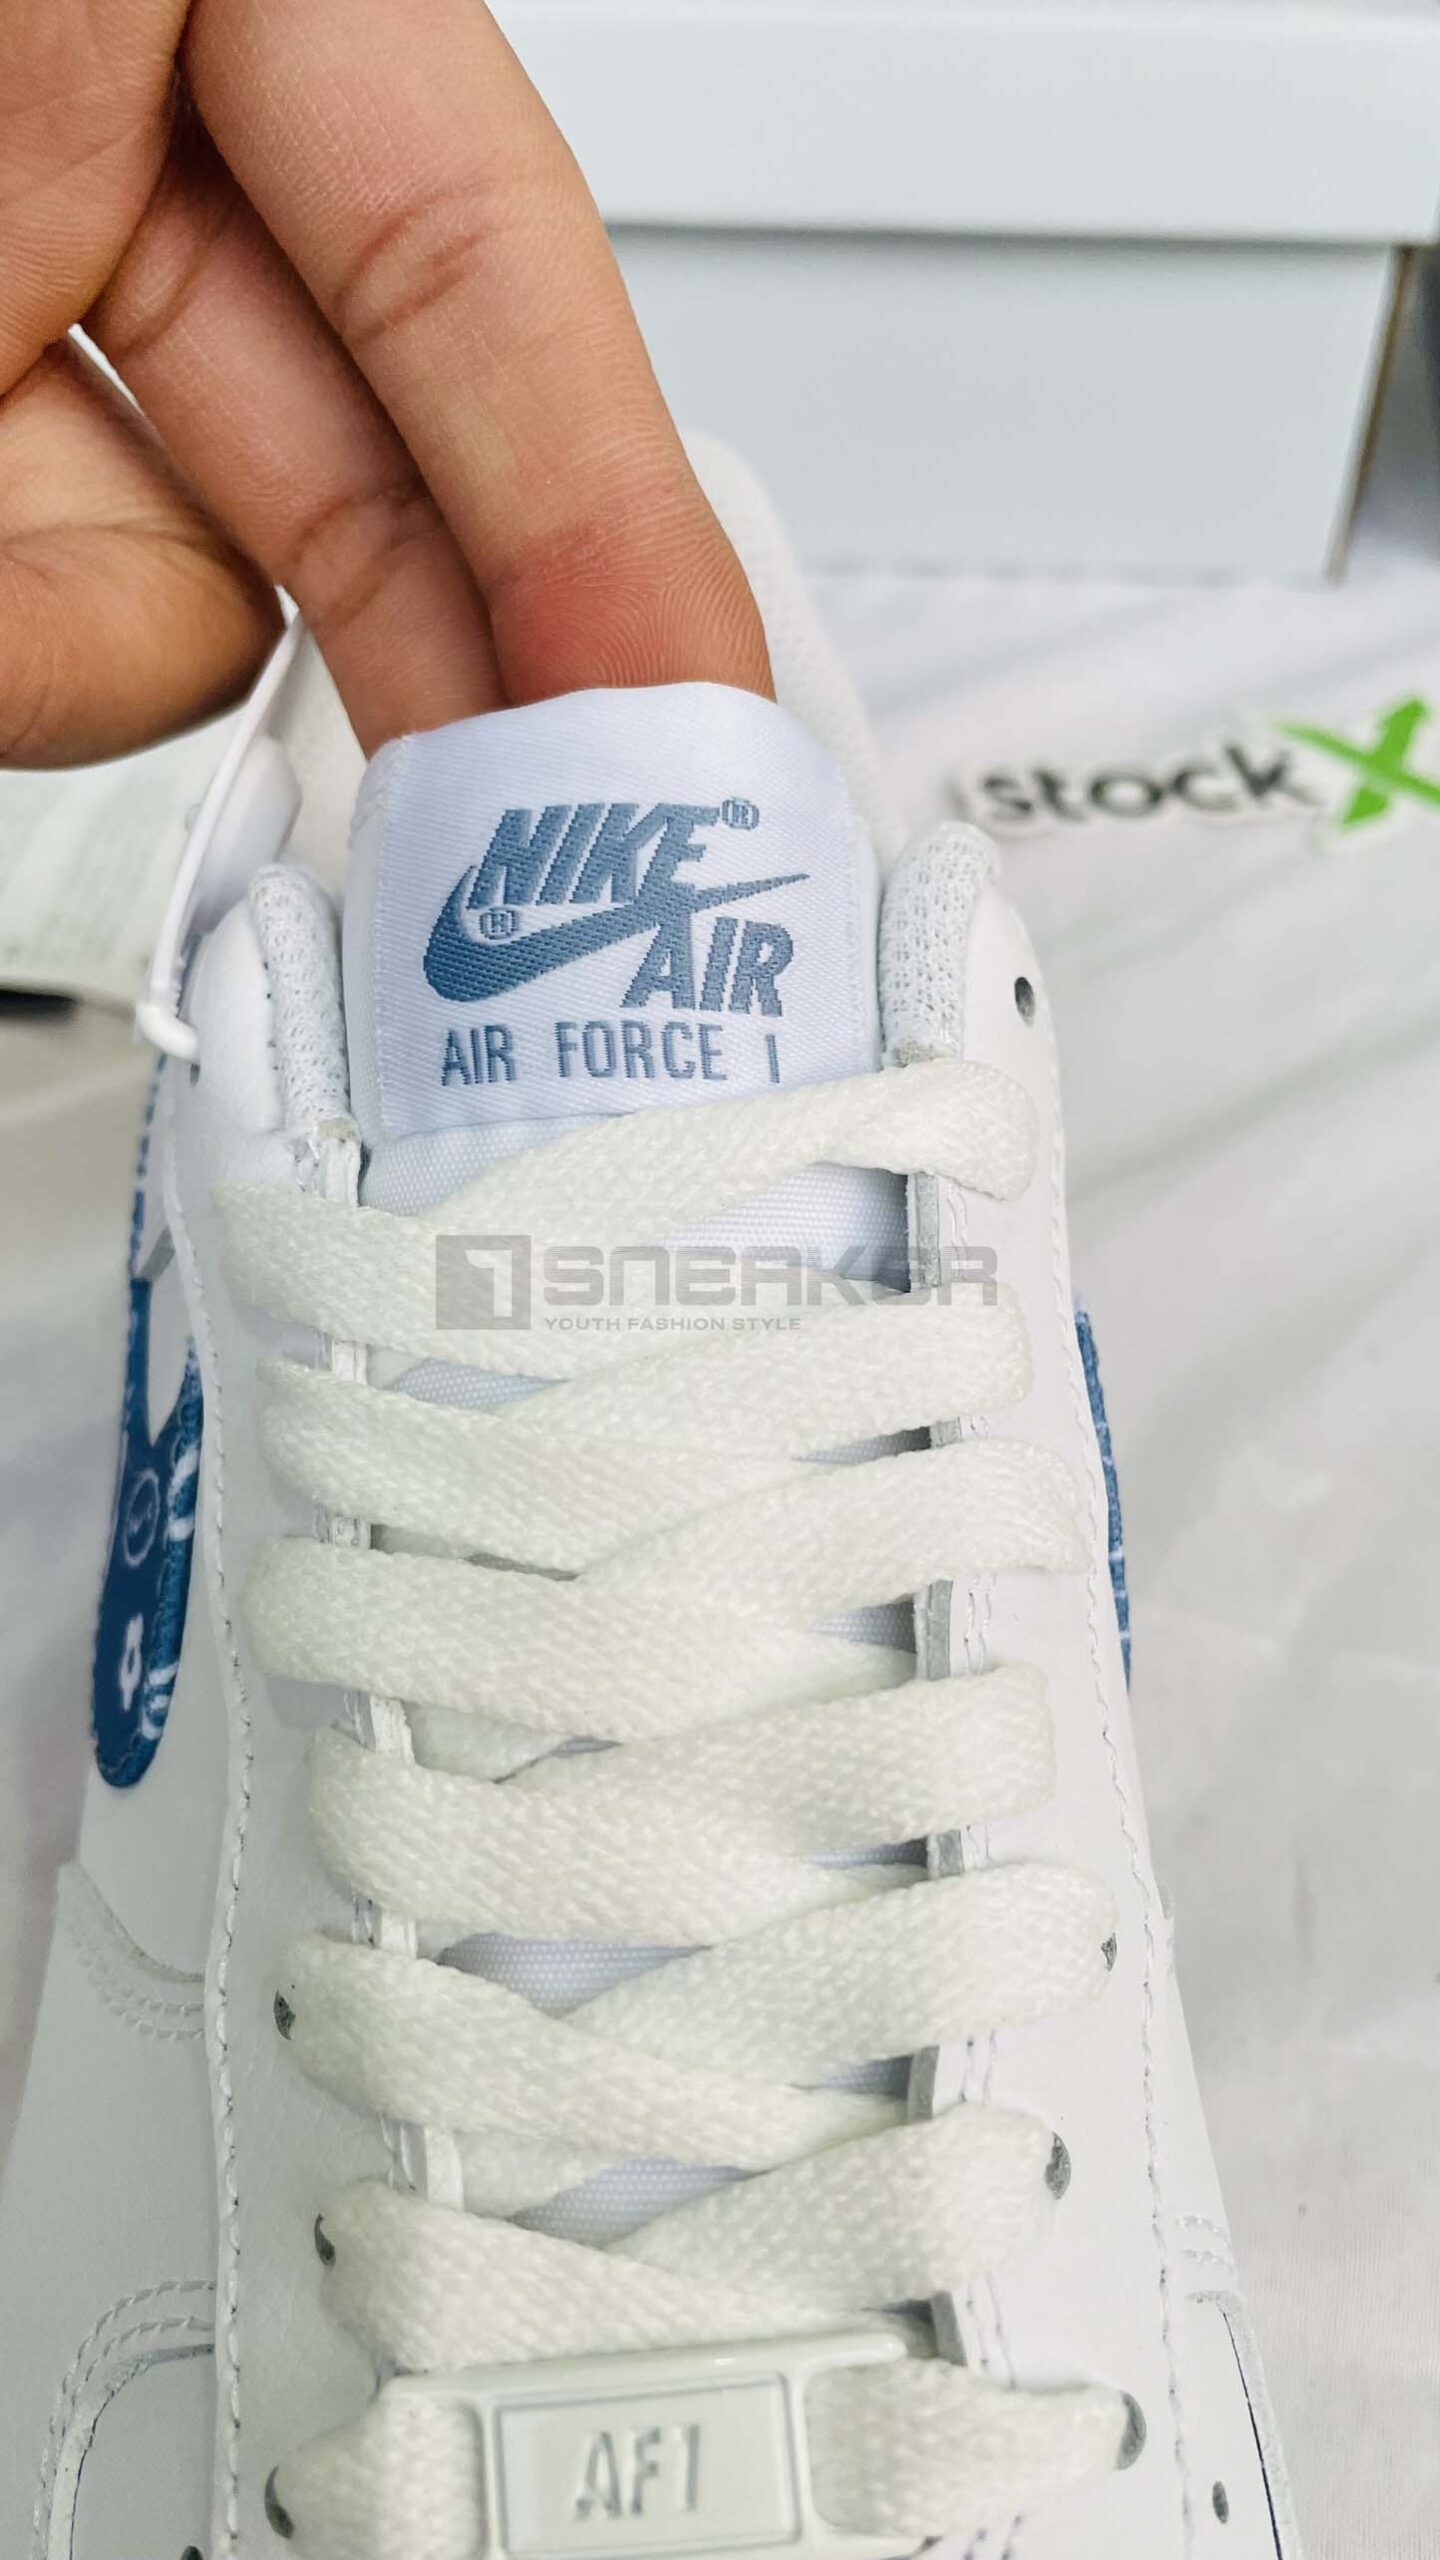 aGiày Nike Air Force 1 Trắng xanh chất liệu giày đẹp